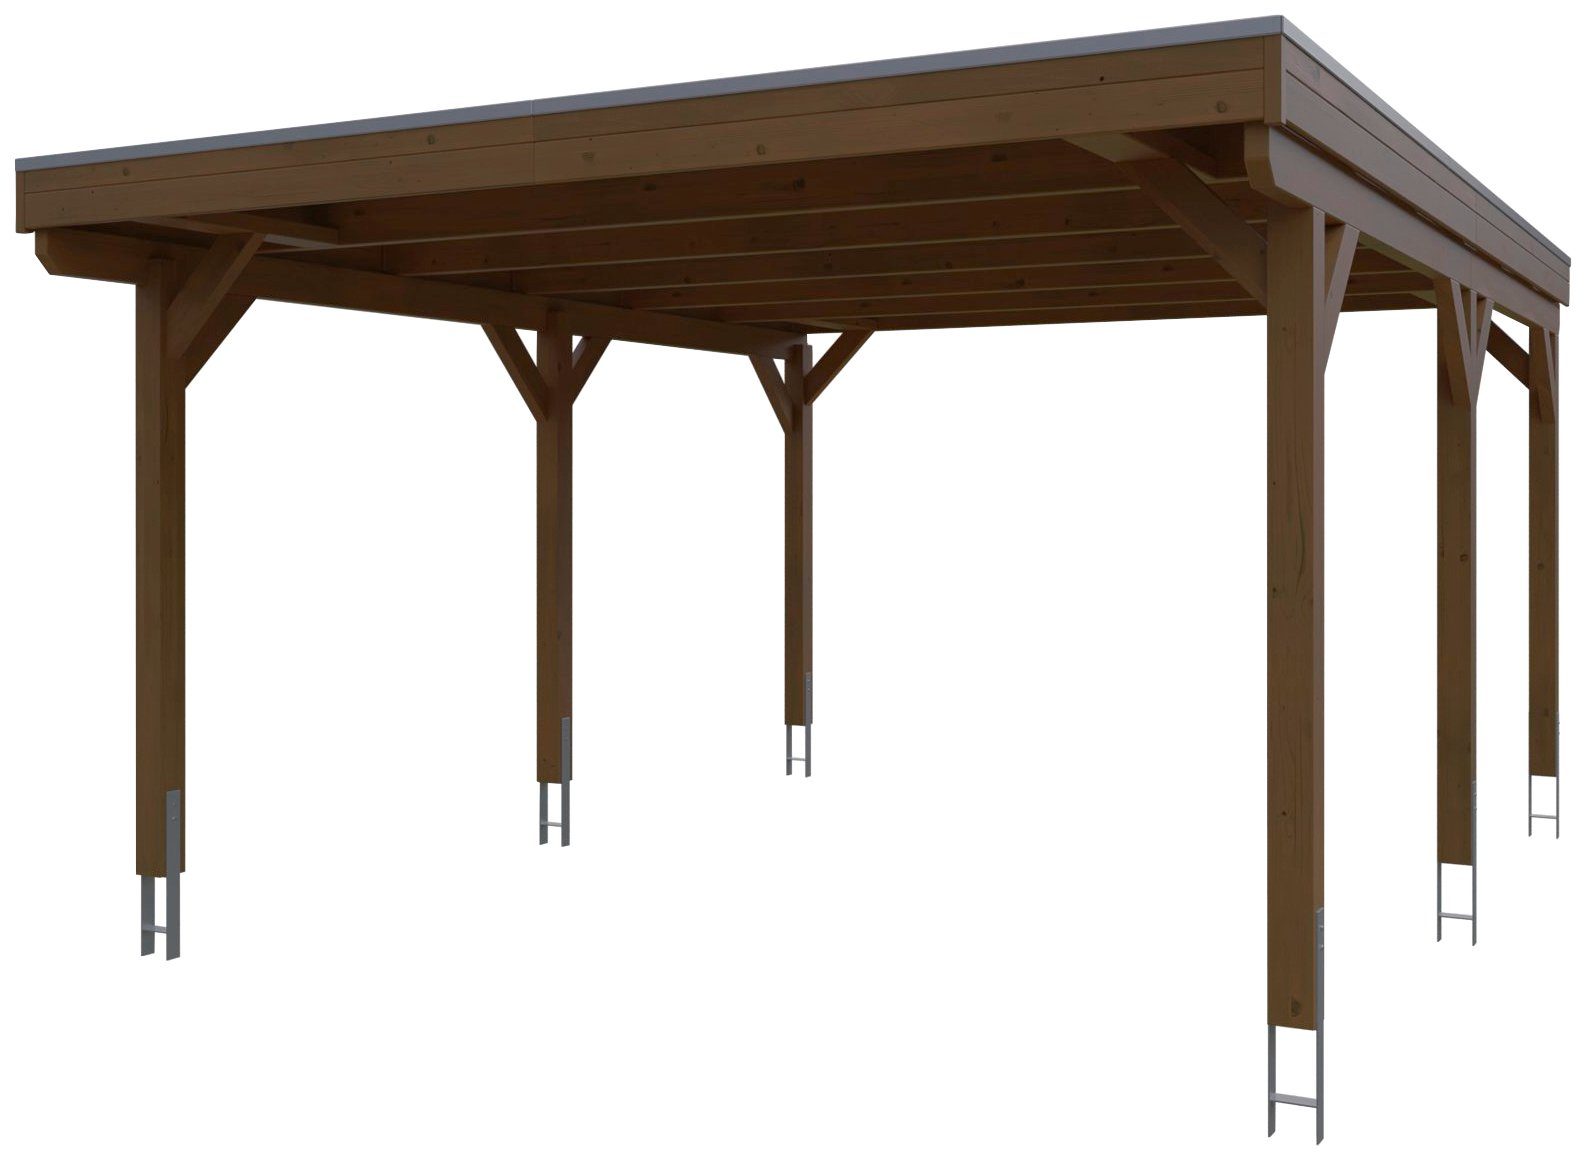 Skanholz Einzelcarport Grunewald, BxT: 427x554 cm, 395 cm Einfahrtshöhe,  mit EPDM-Dach, Flachdach-Carport, farblich behandelt in nussbaum